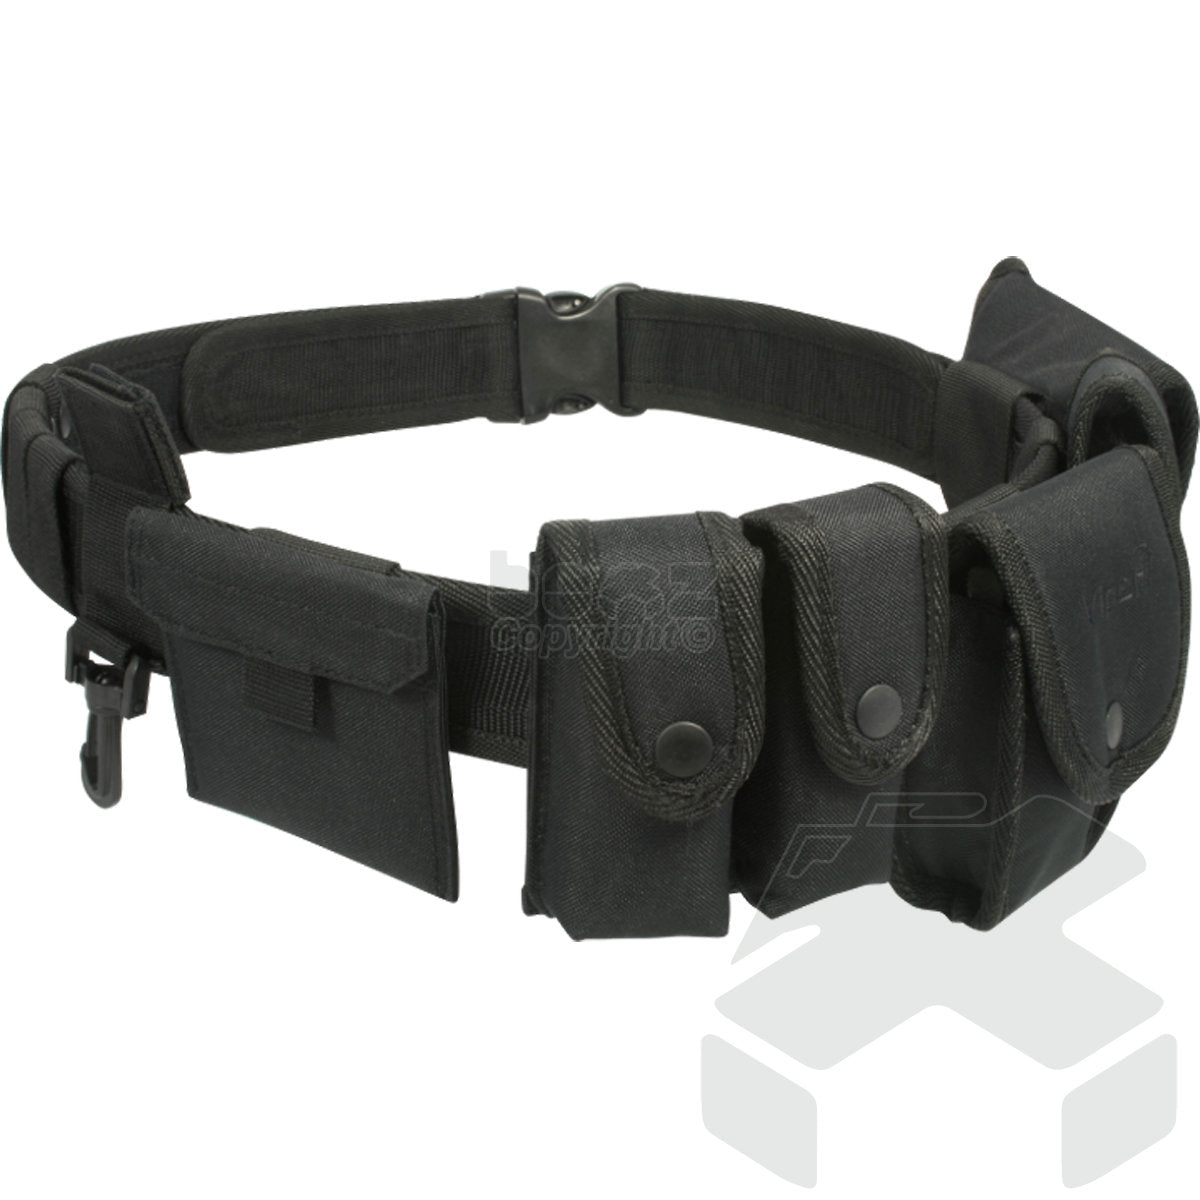 Viper Security Belt System - Black